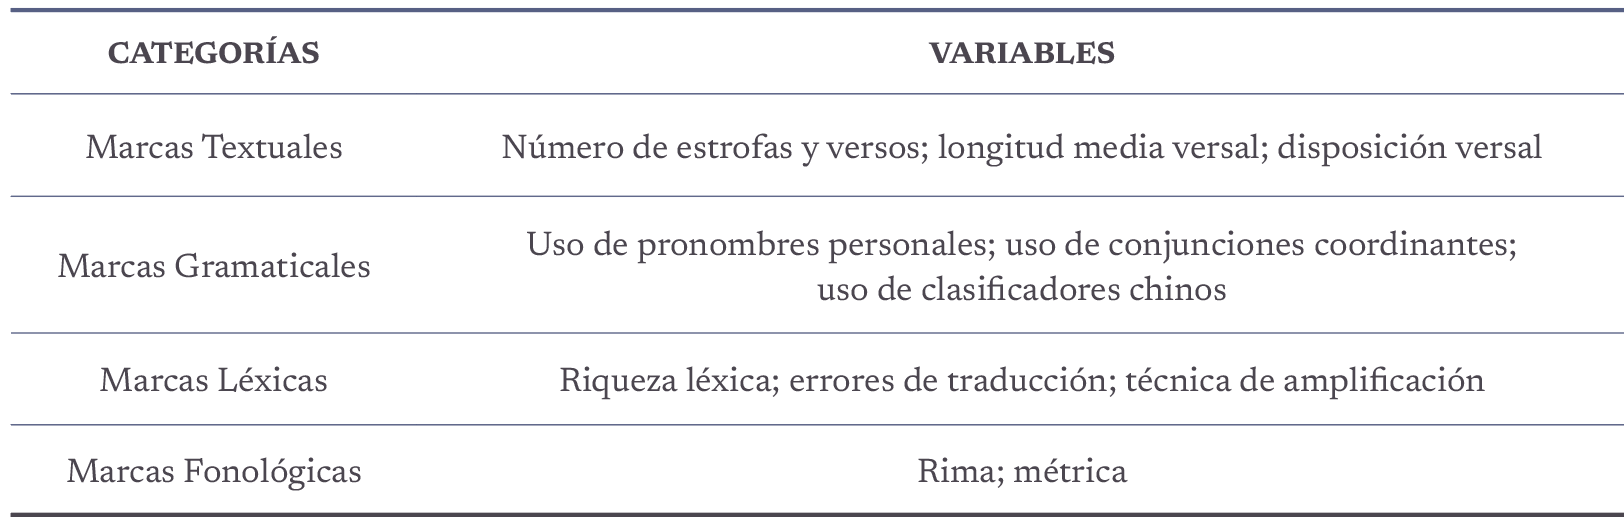 Categorías y variables de las marcas estilísticas analizados en el presente estudio